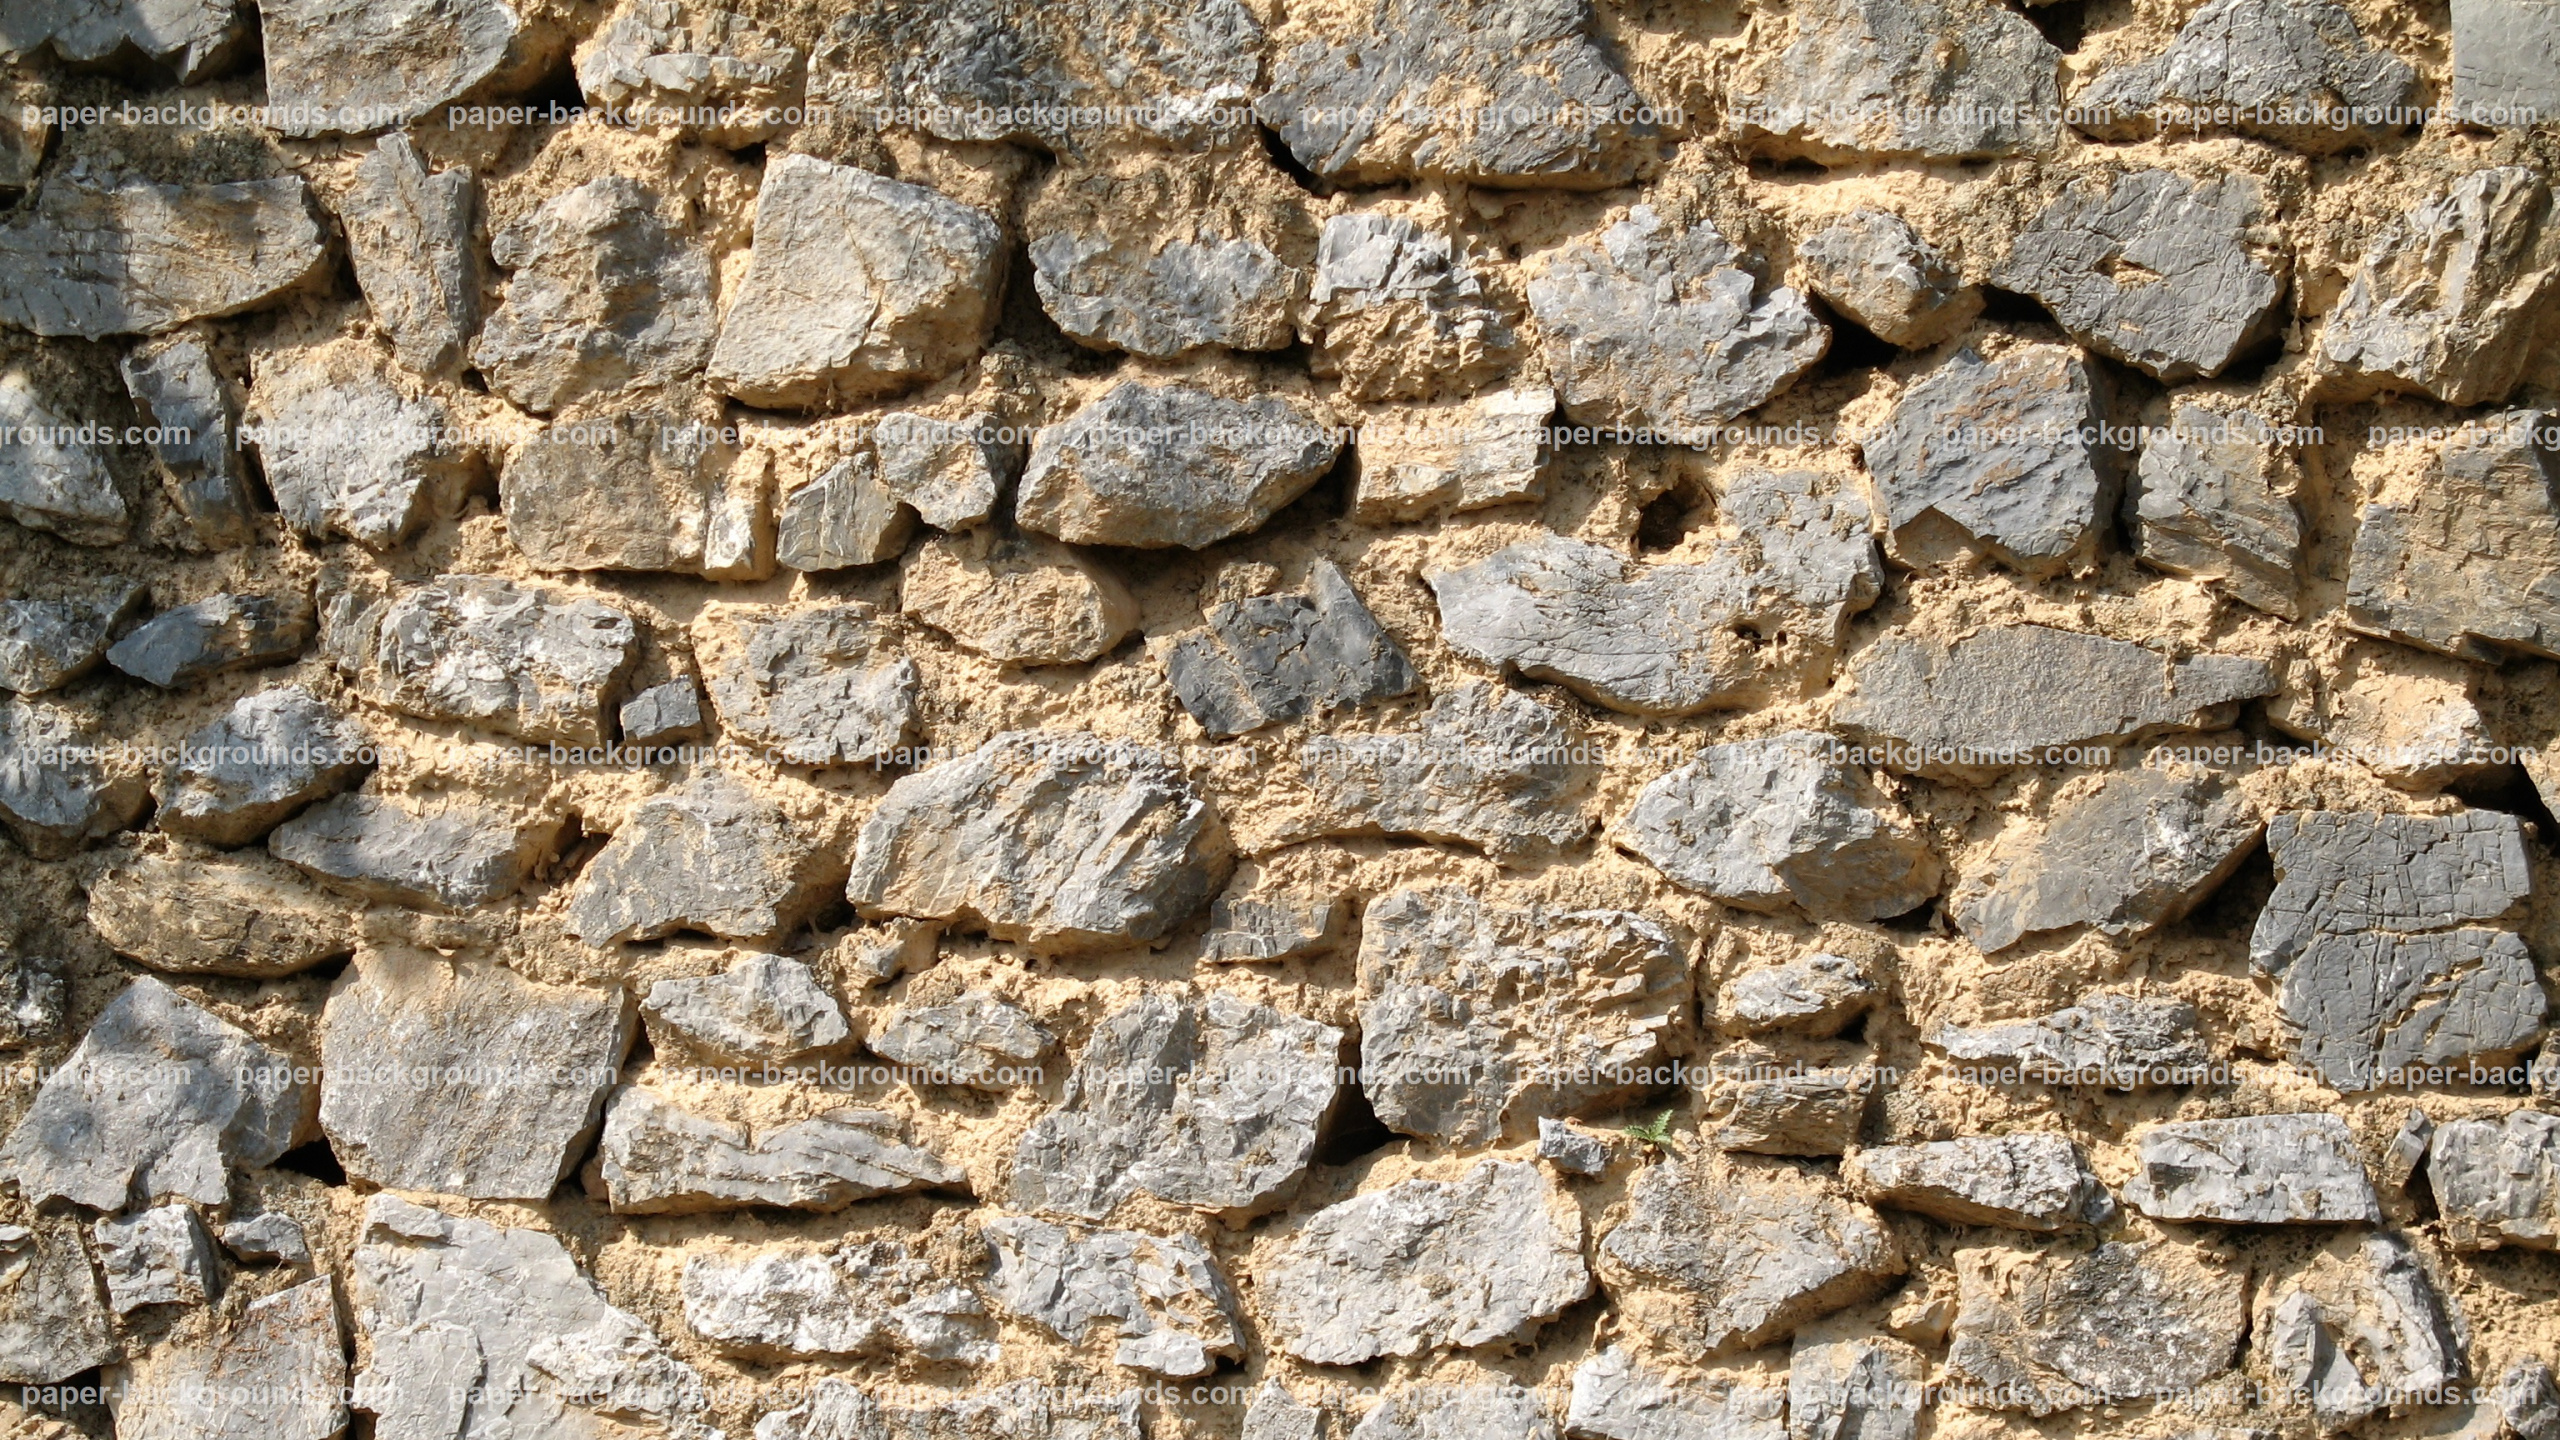 砖, 石壁, 废墟, 石灰岩, 鹅卵石 壁纸 2560x1440 允许